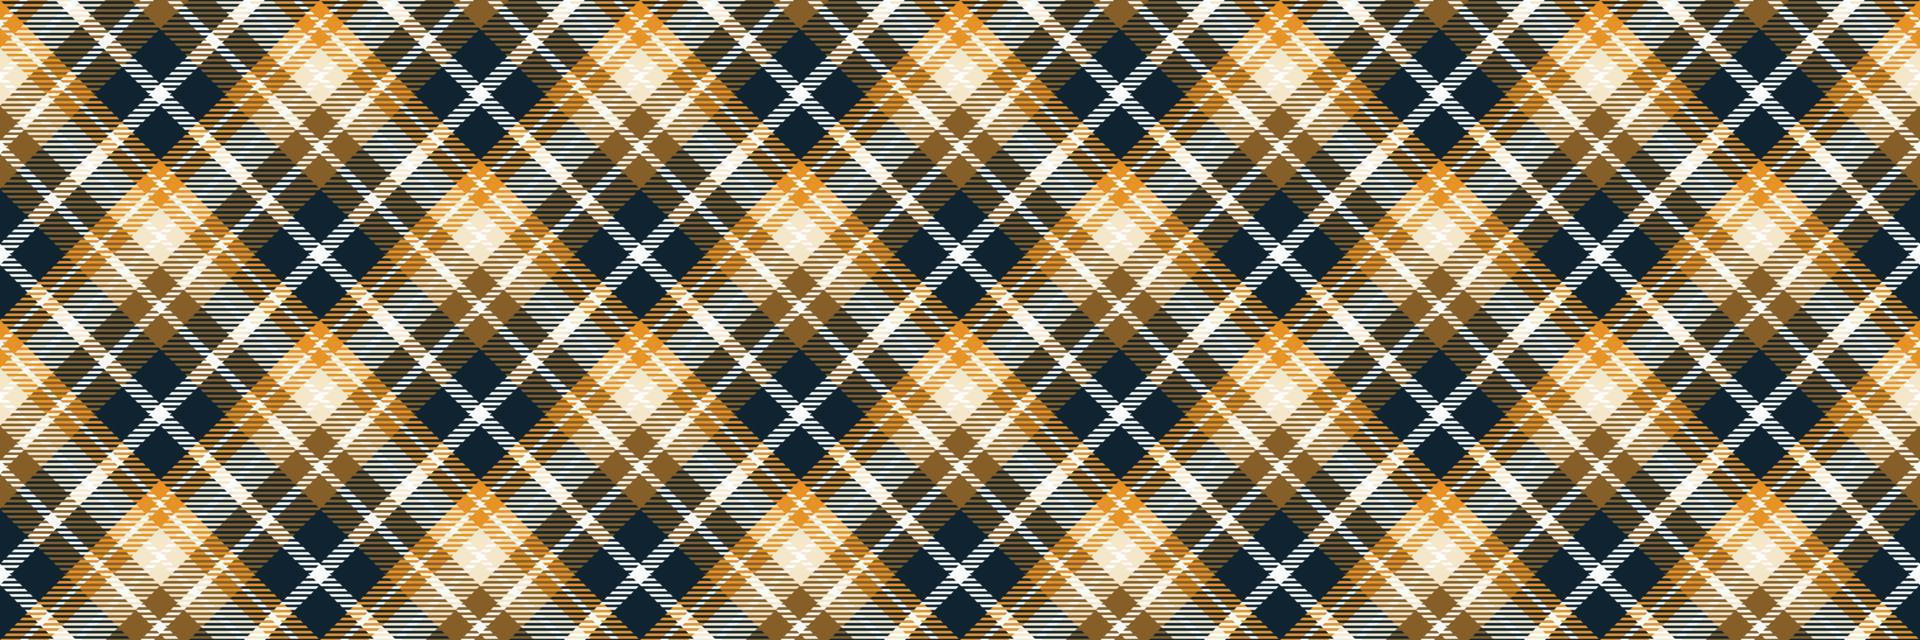 Schots Schotse ruit patroon naadloos is een gevormde kleding bestaande van kris gekruist, horizontaal en verticaal bands in meerdere kleuren.plaid naadloos voor sjaal, pyjama, deken, dekbed, kilt groot sjaal. vector